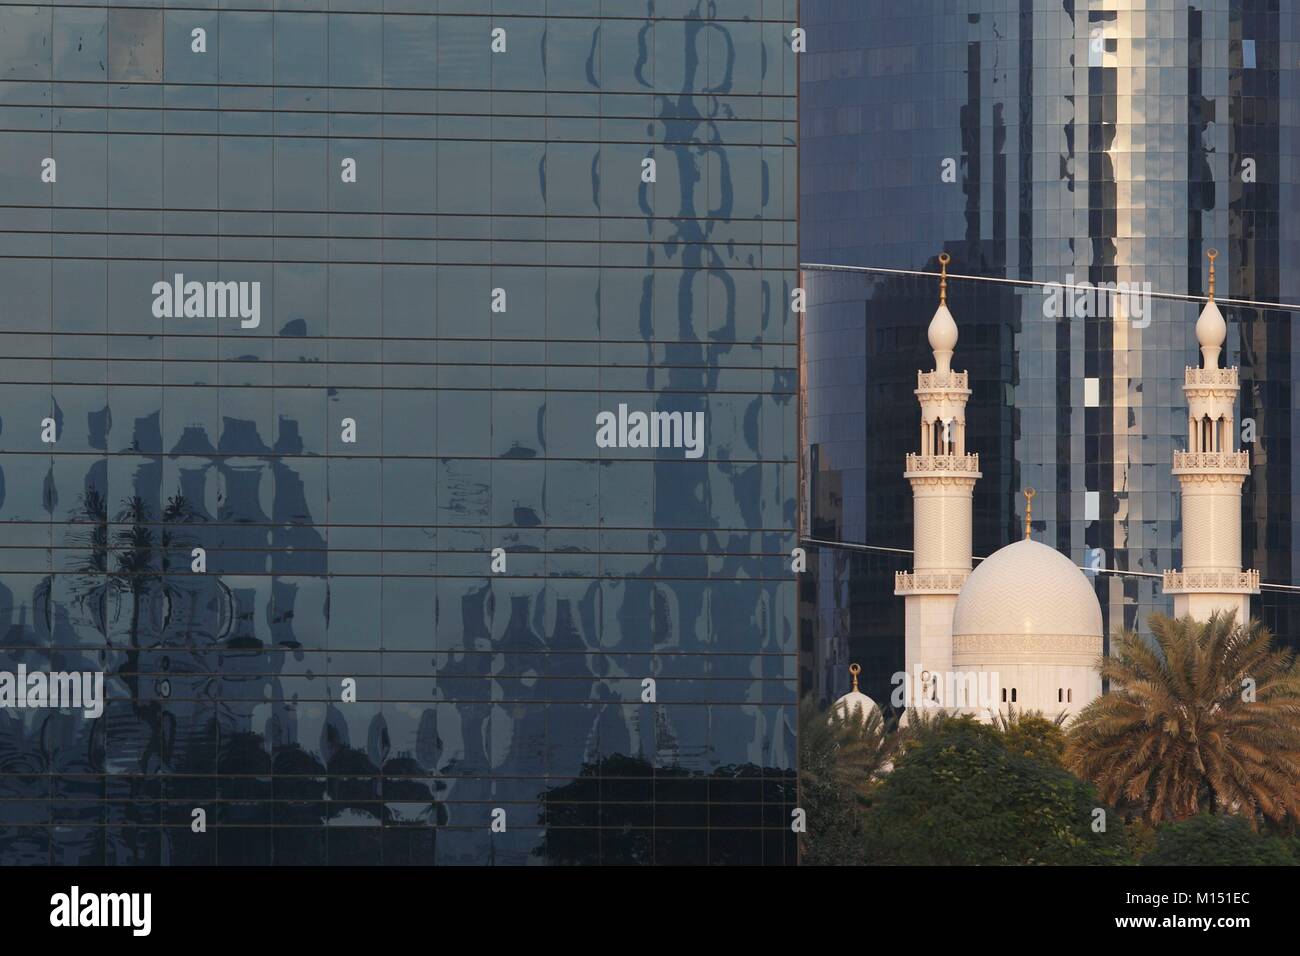 Emirats arabes unis, dubaï, Deira, architecture traditionnelle et moderne tower Banque D'Images